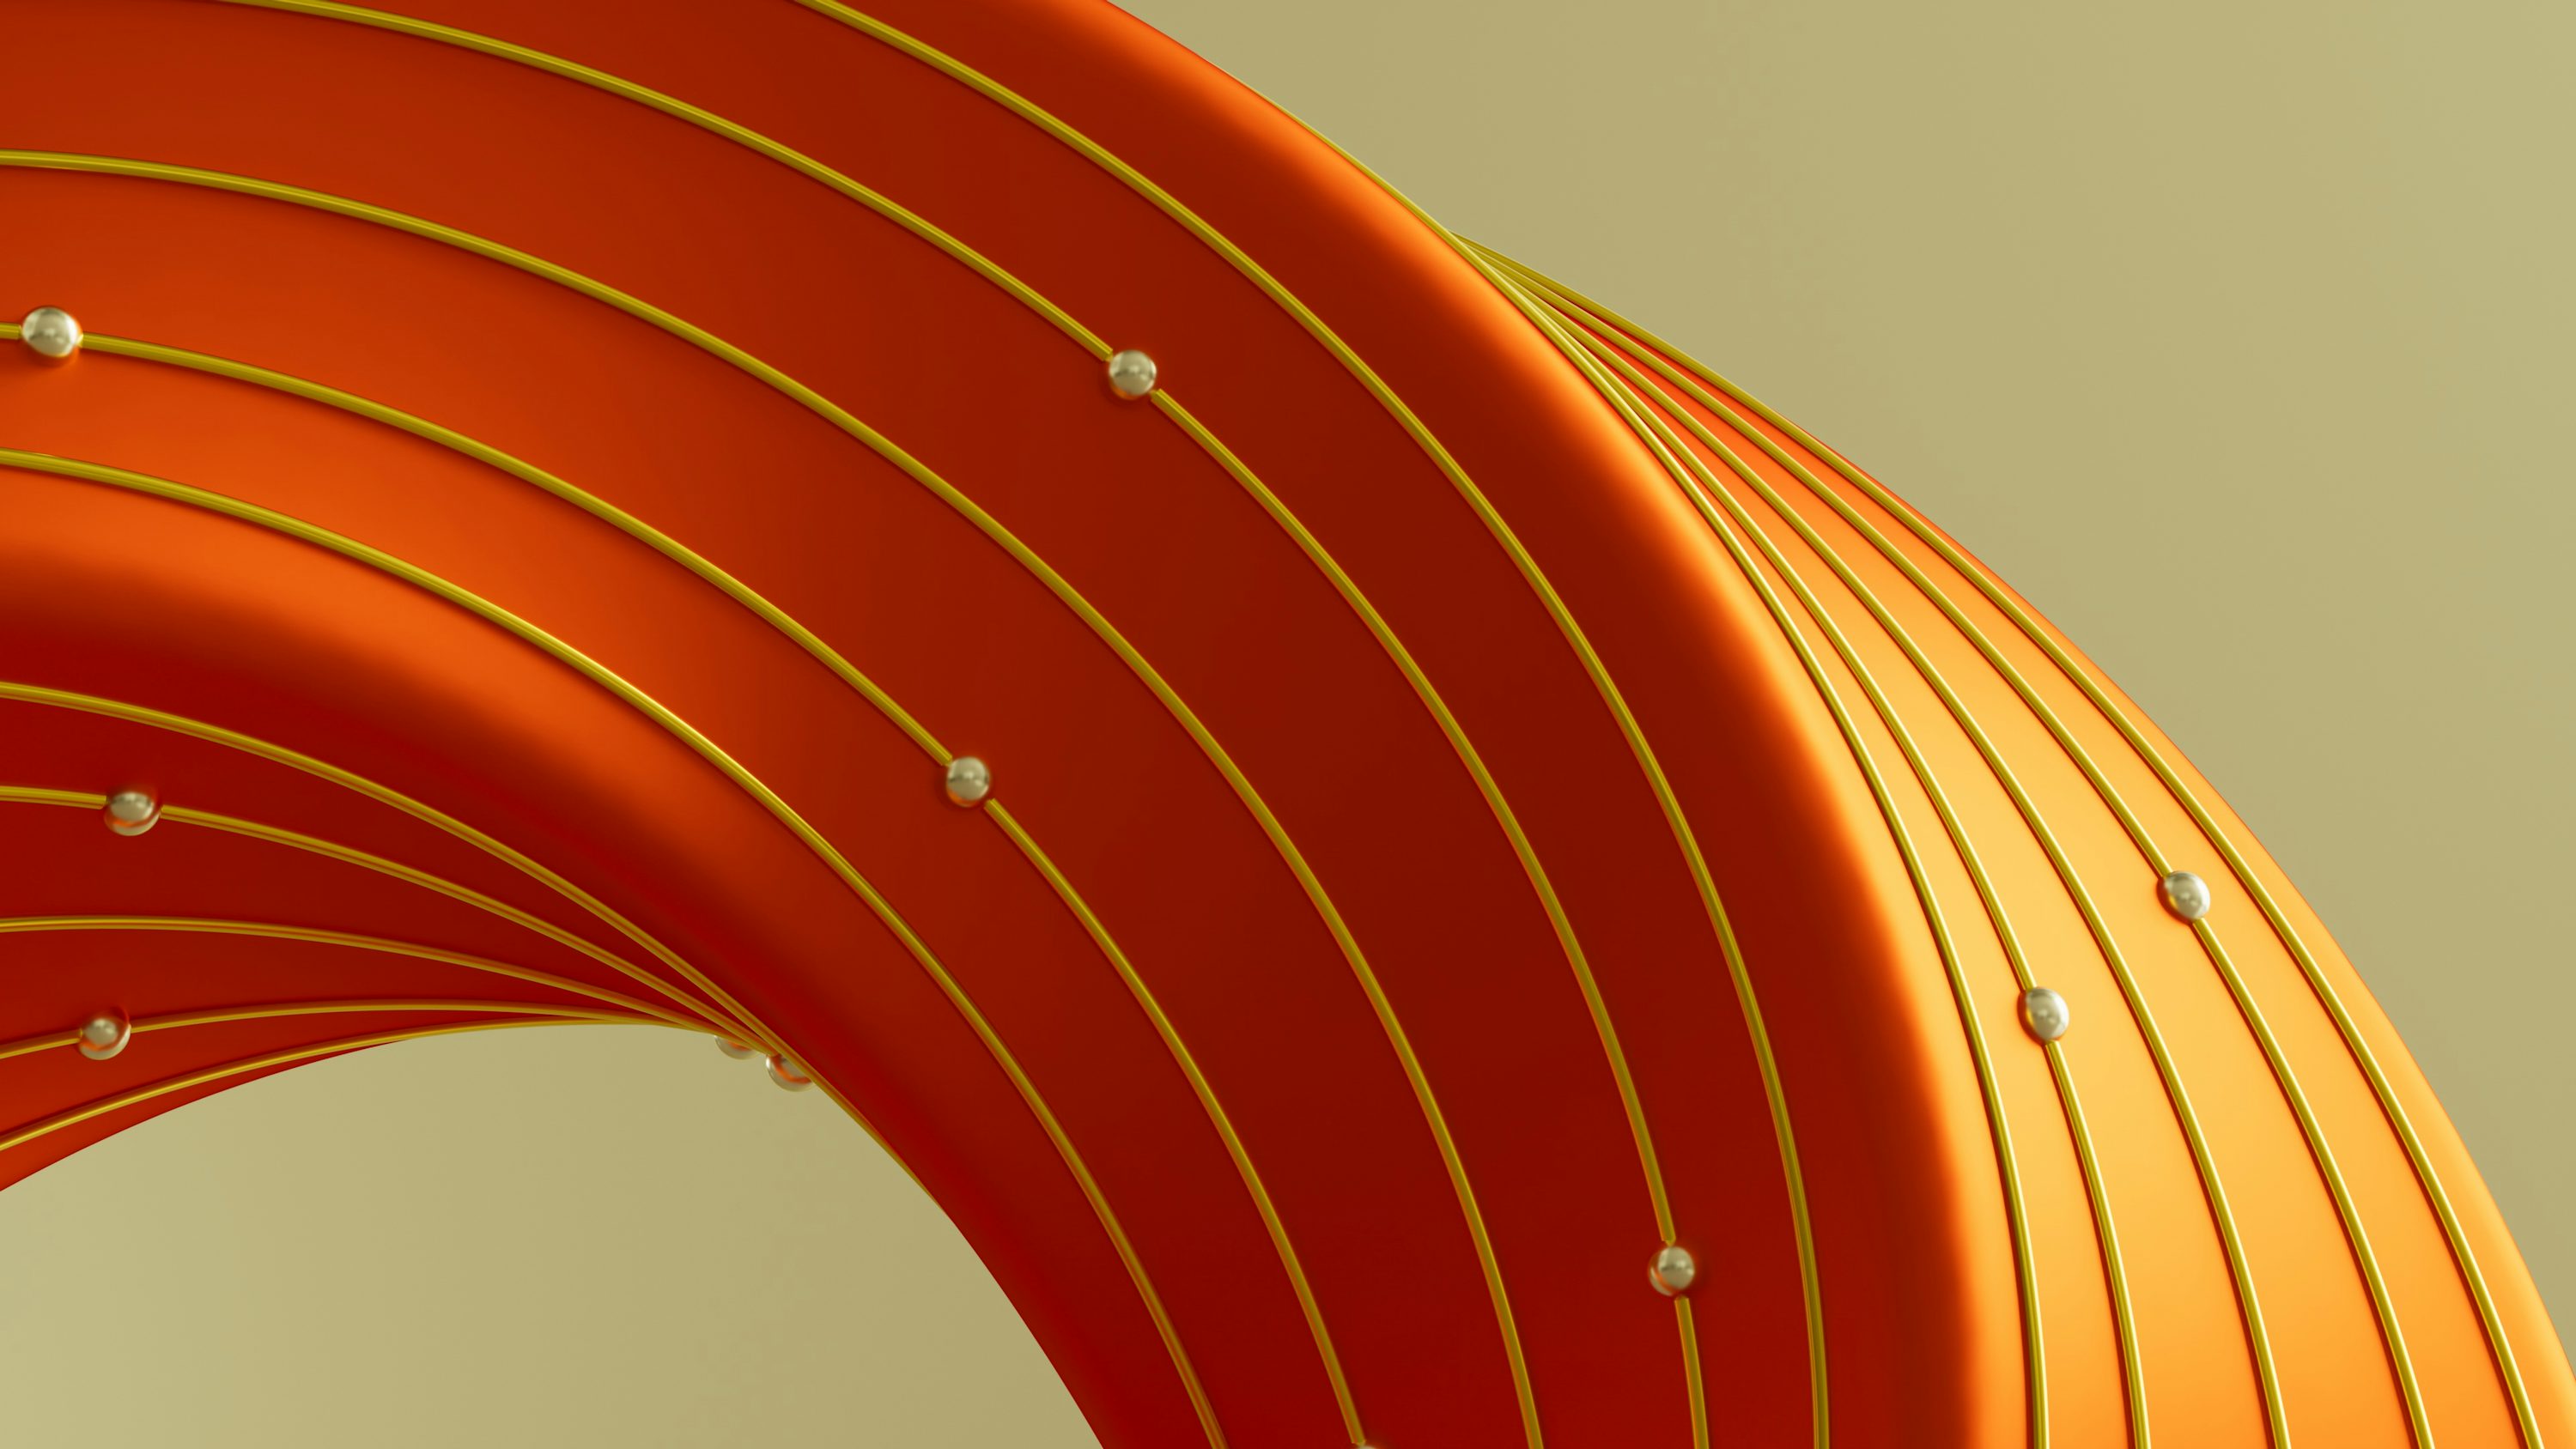 uma imagem abstrata de um objeto laranja curvo